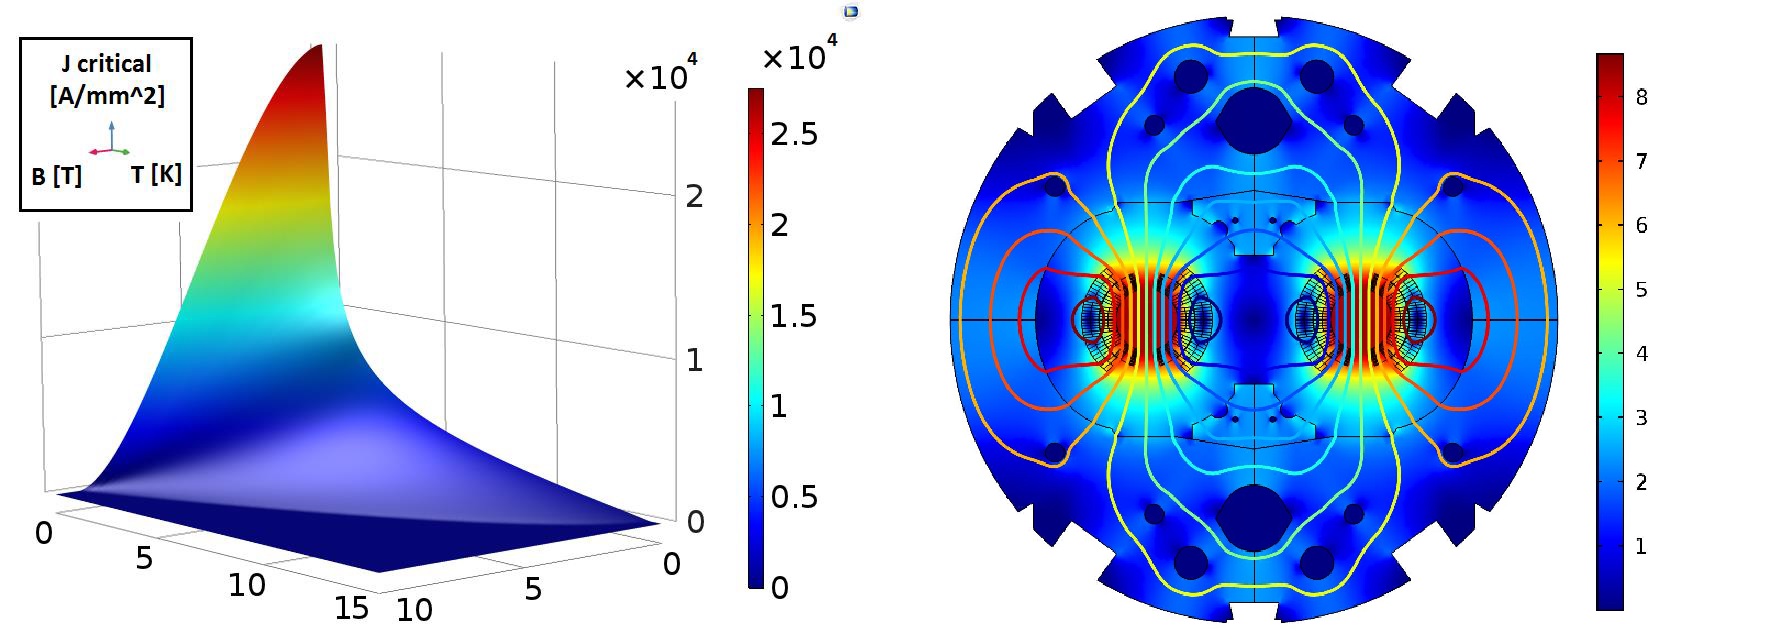 Анализ срывов сверхпроводимости магнитов Большого адронного коллайдера в CERN - 4